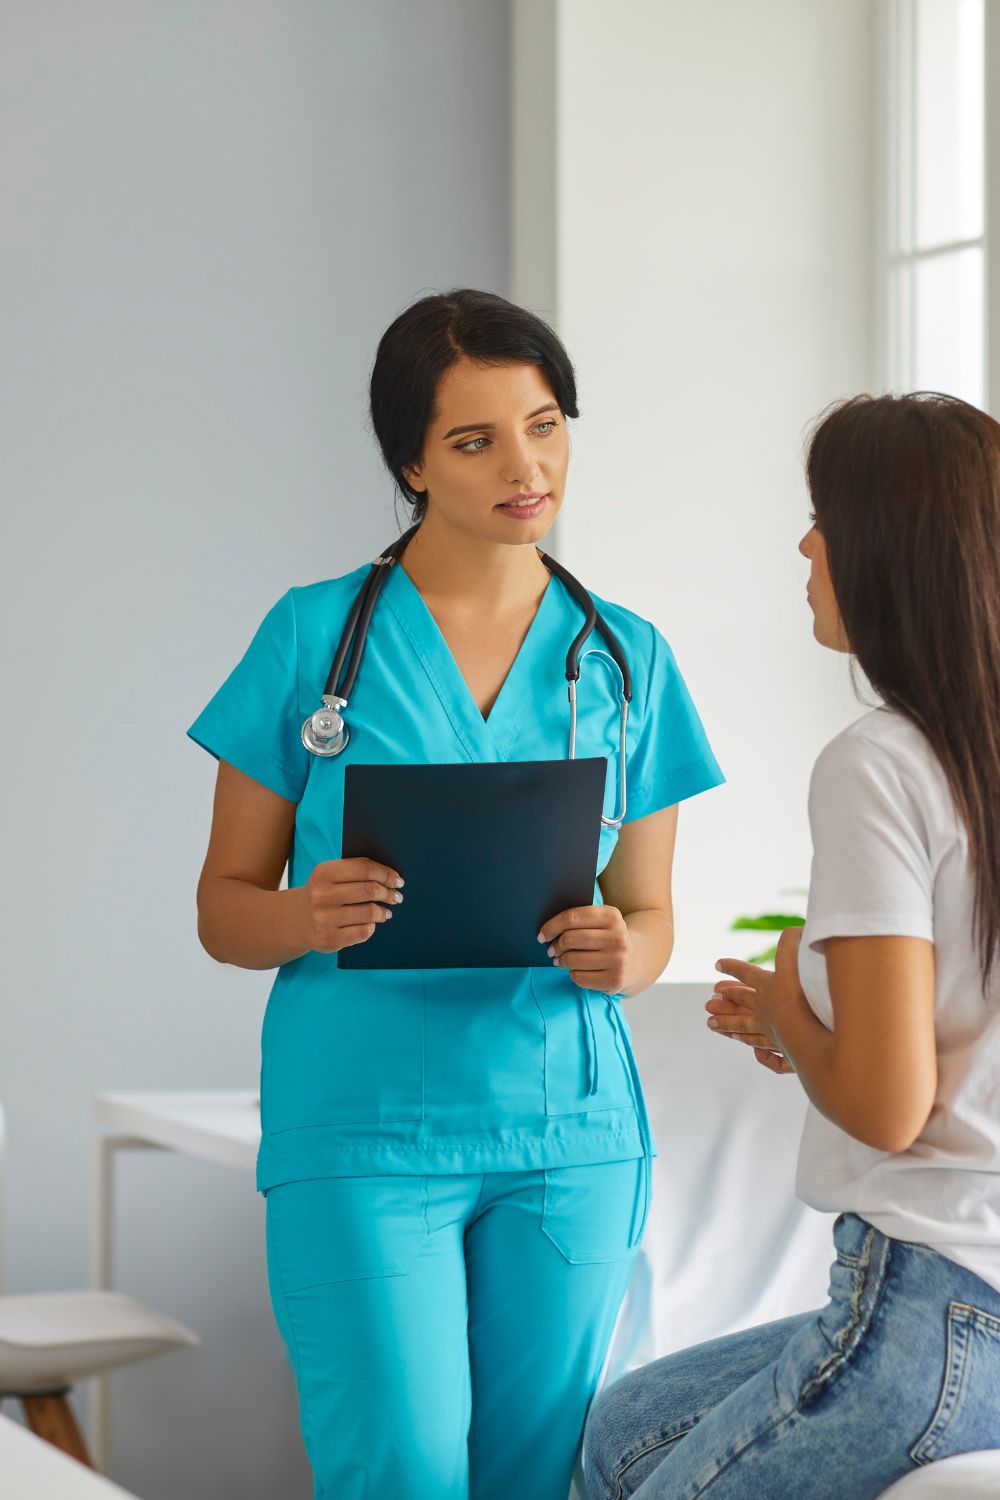 Per Diem Nursing Jobs Top Benefits & Advantages